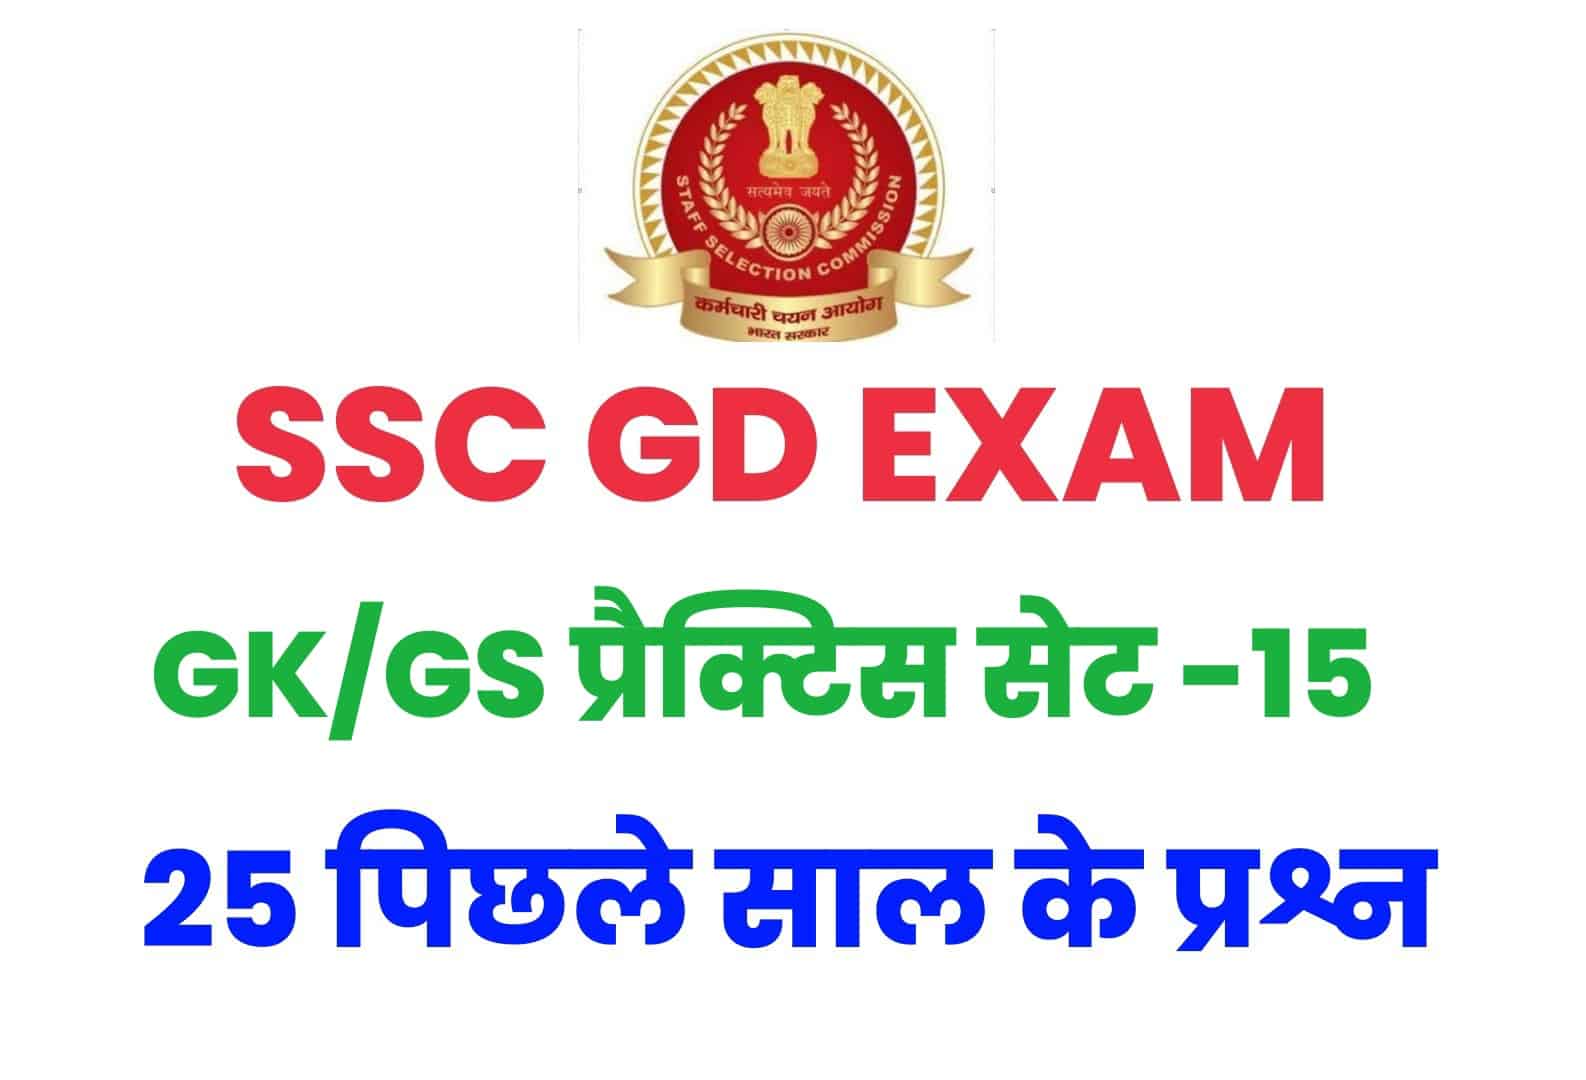 SSC GD GK/GS प्रैक्टिस सेट -15 : परीक्षा में आ सकते हैं ये प्रश्न, कर लें अध्ययन